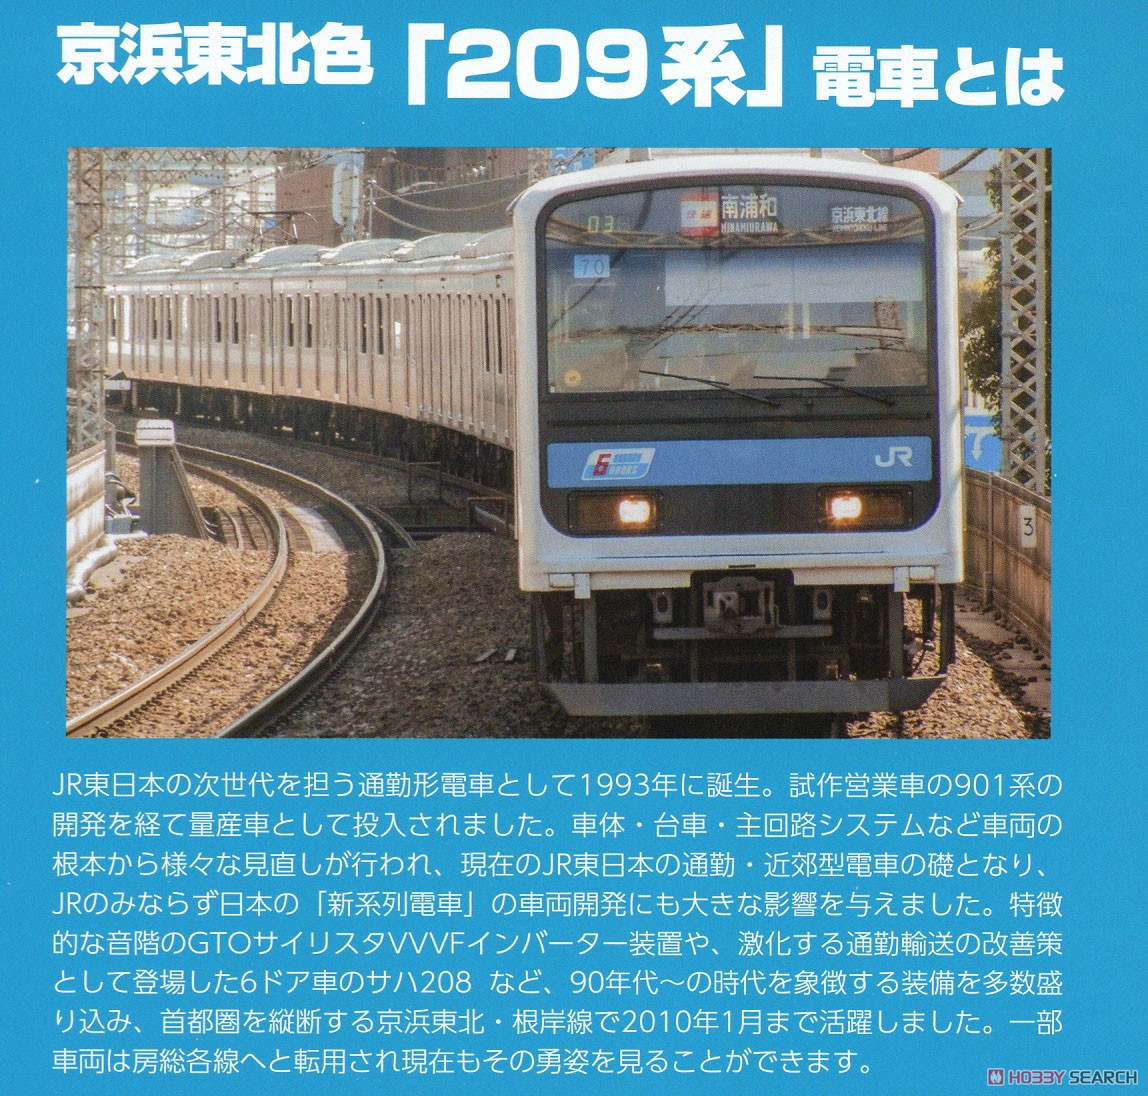 16番(HO) JR東日本 209系 直流電車タイプ (京浜東北色) クハ209・クハ208 キット (2両・組み立てキット) (鉄道模型) 解説1